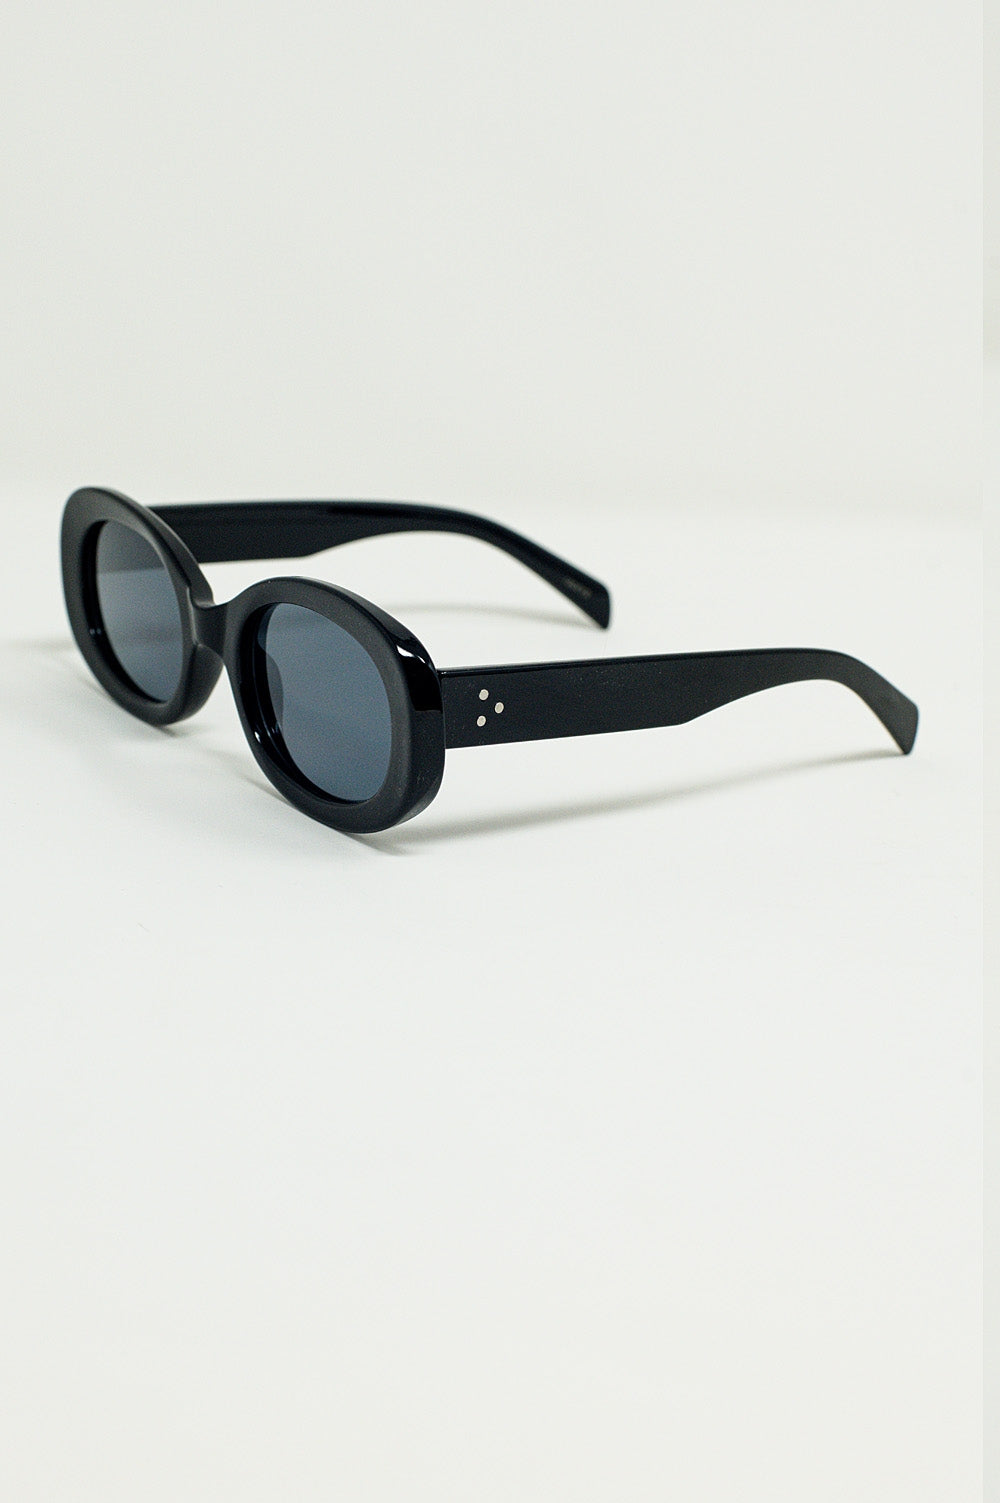 Gafas de sol ovaladas extragrandes en negro